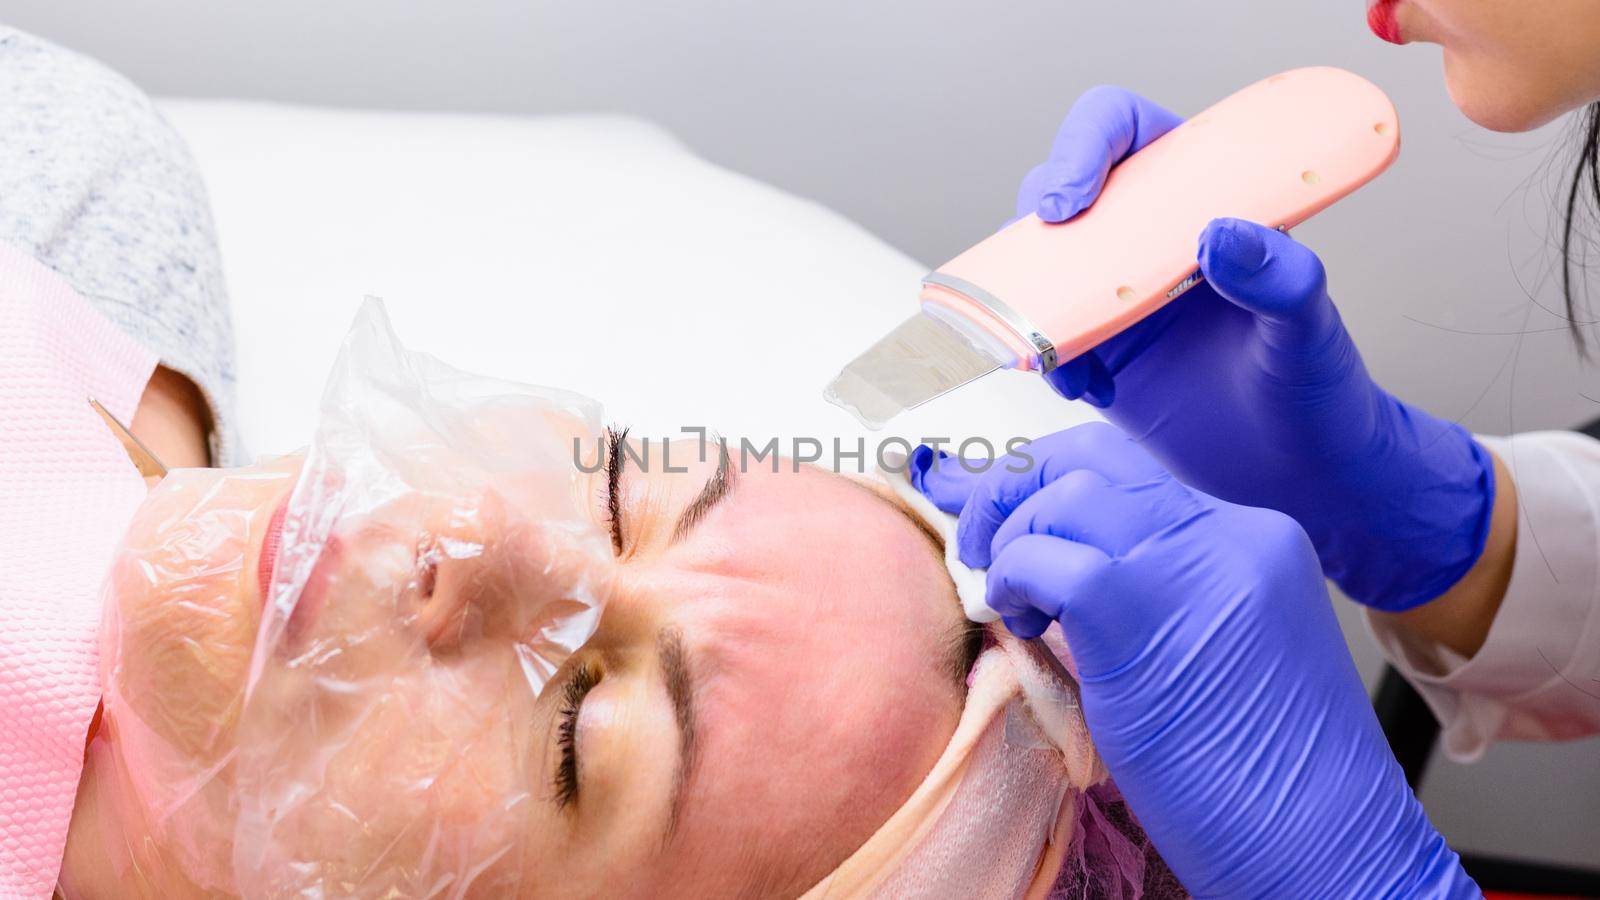 Ultrasonic facial cleansing, moisturizing, restoring and smoothing wrinkles. Facial cleansing with an ultrasonic scrubber. by Niko_Cingaryuk